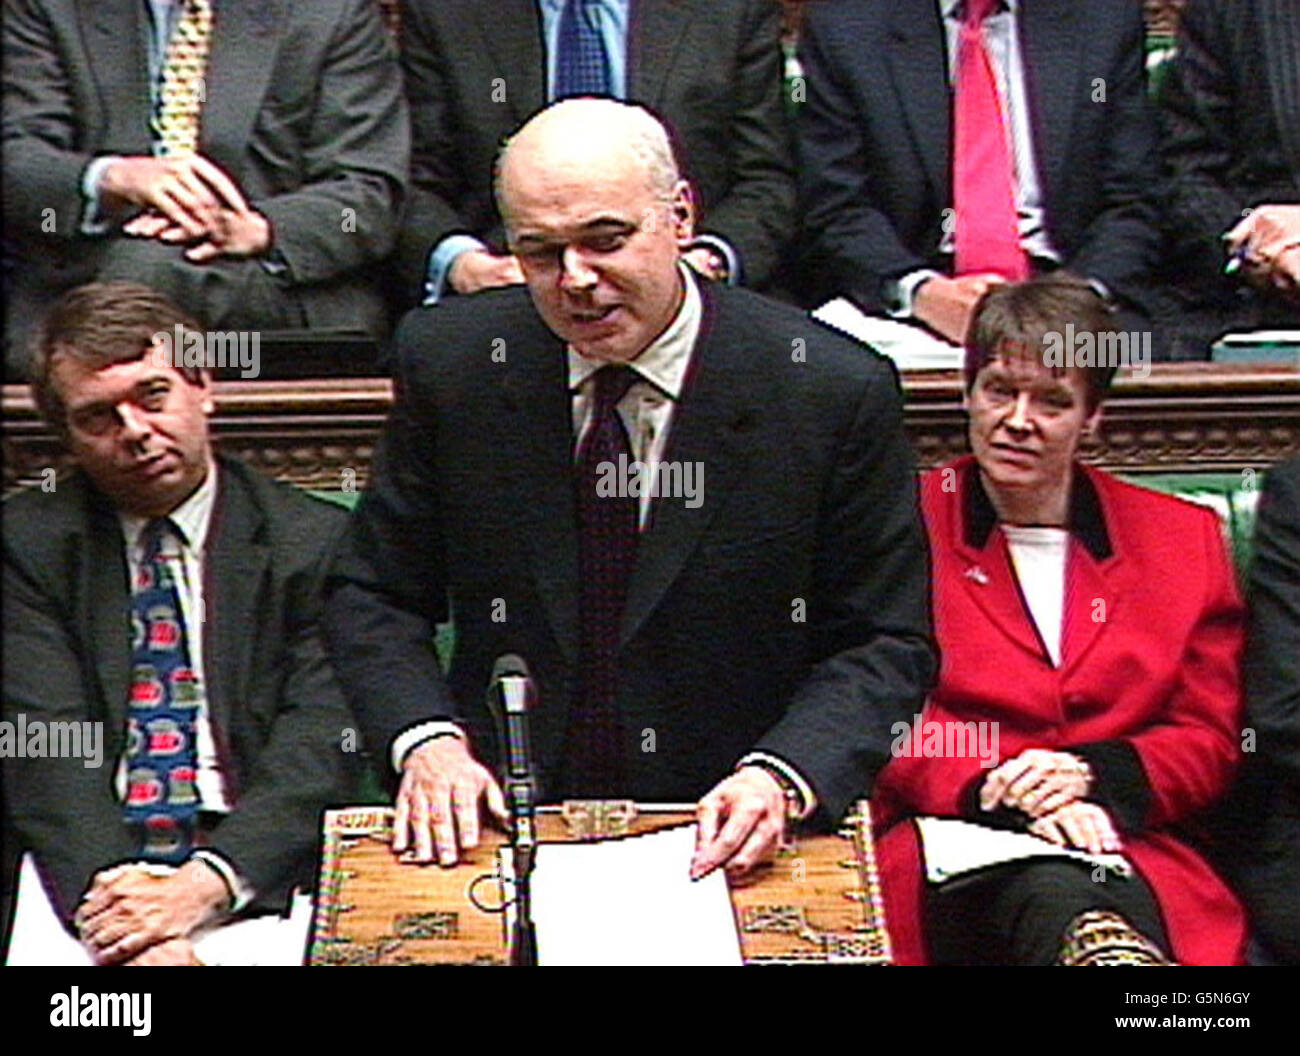 Le chef de l'opposition Iain Duncan Smith pendant les questions du premier ministre à la Chambre des communes, dans le centre de Londres. Banque D'Images